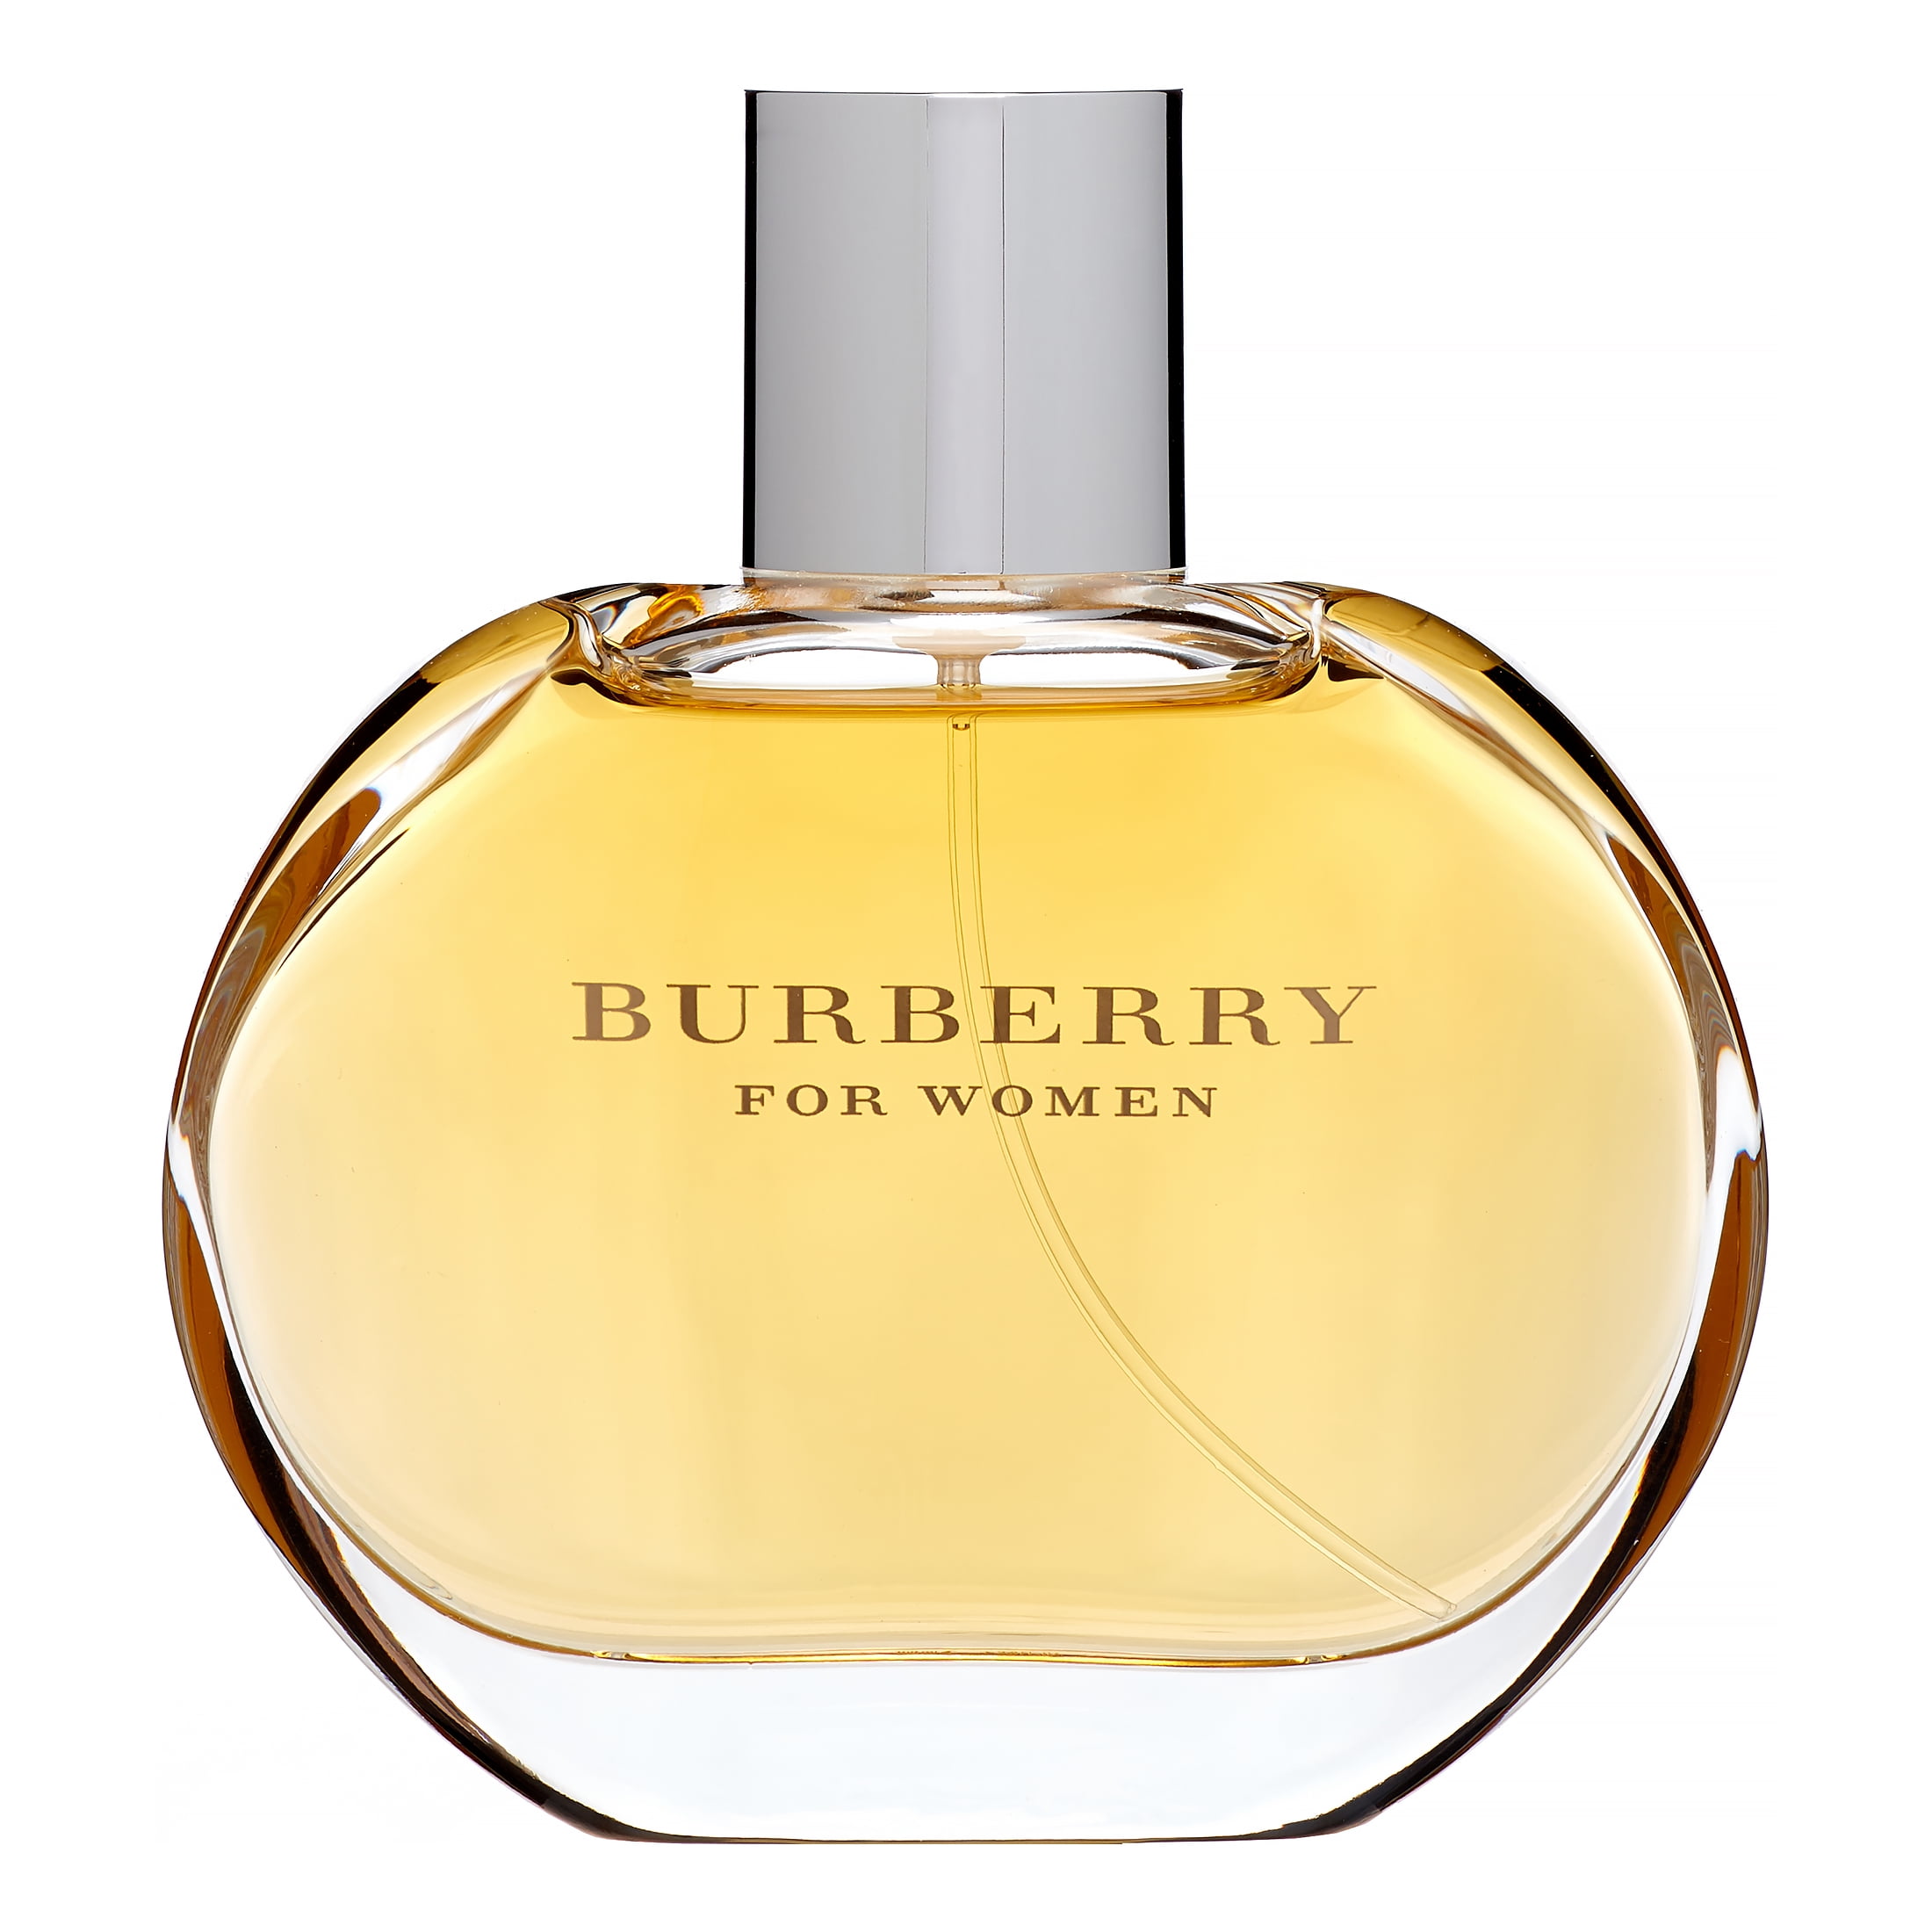 Burberry Classic Eau de Parfum, Perfume for Women, 3.3 Oz - Walmart.com